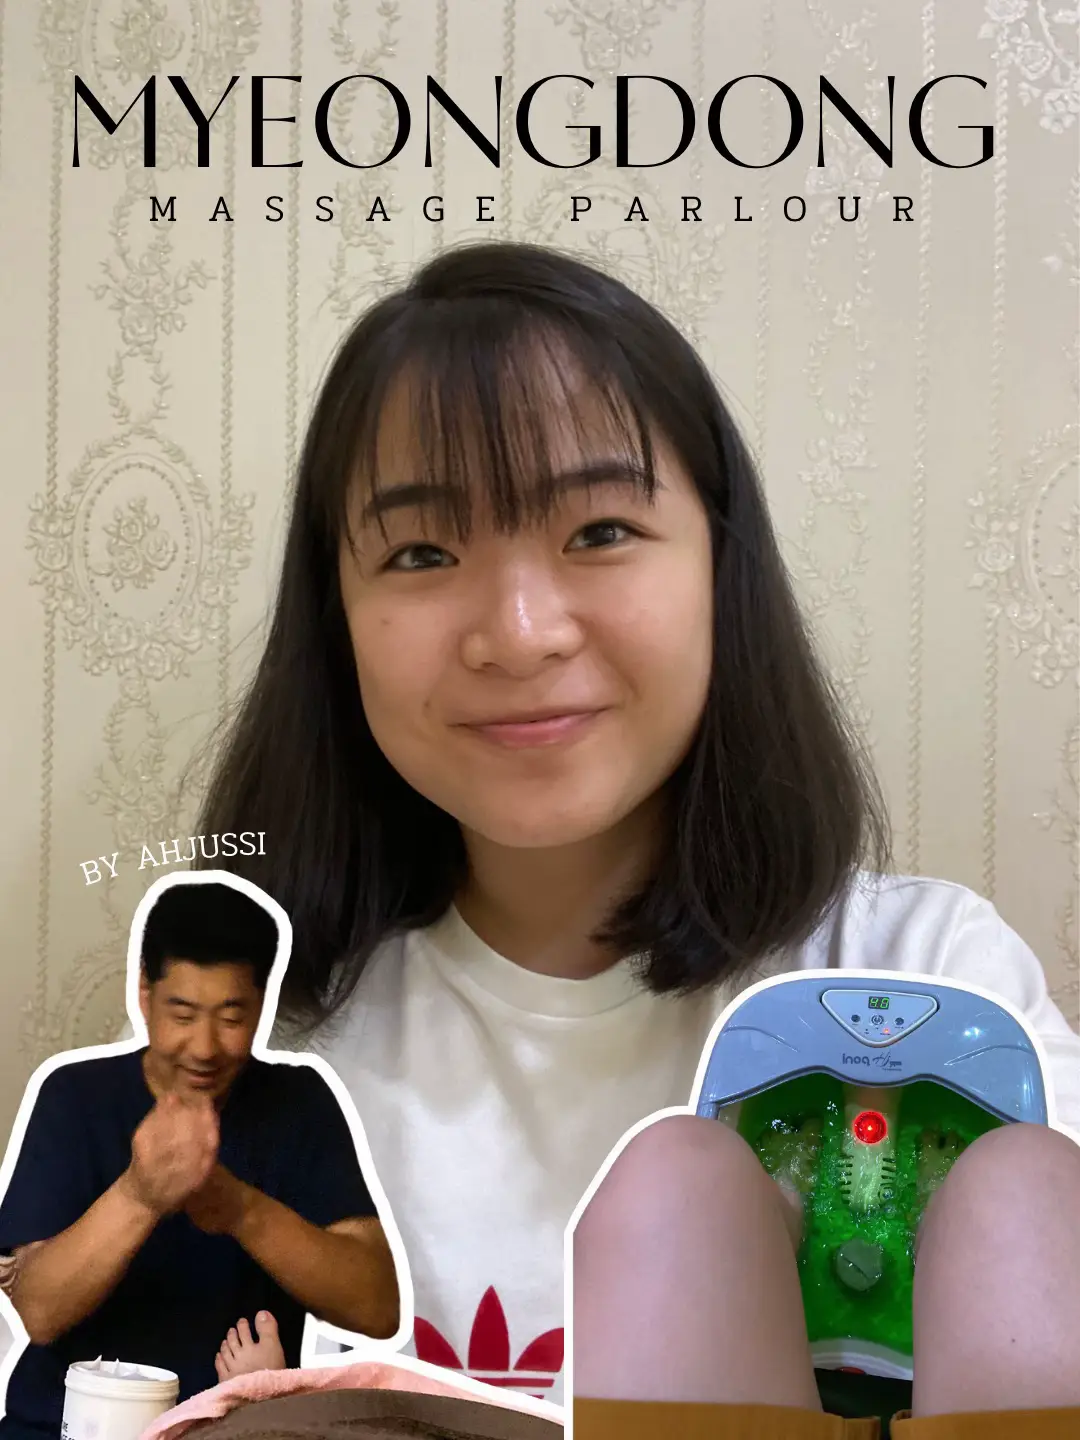 Cheap foot massage at Myeongdong! 's images(0)